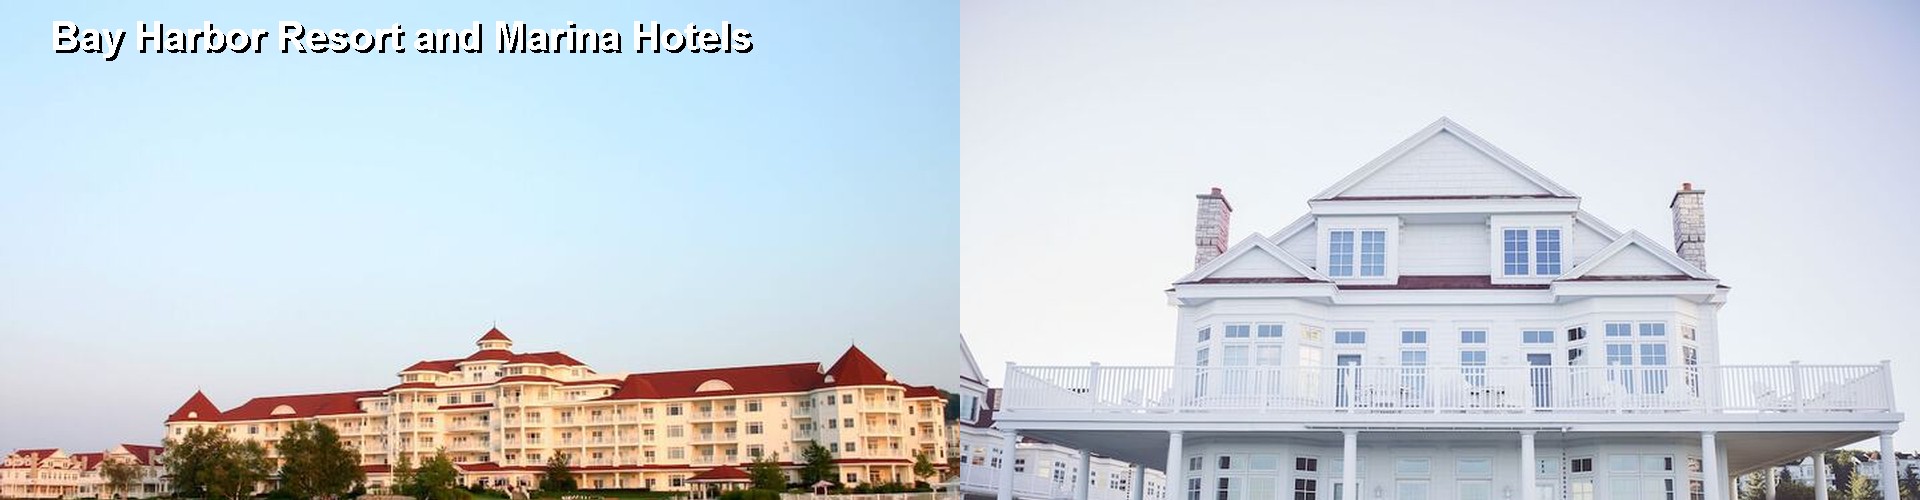 4 Best Hotels near Bay Harbor Resort and Marina